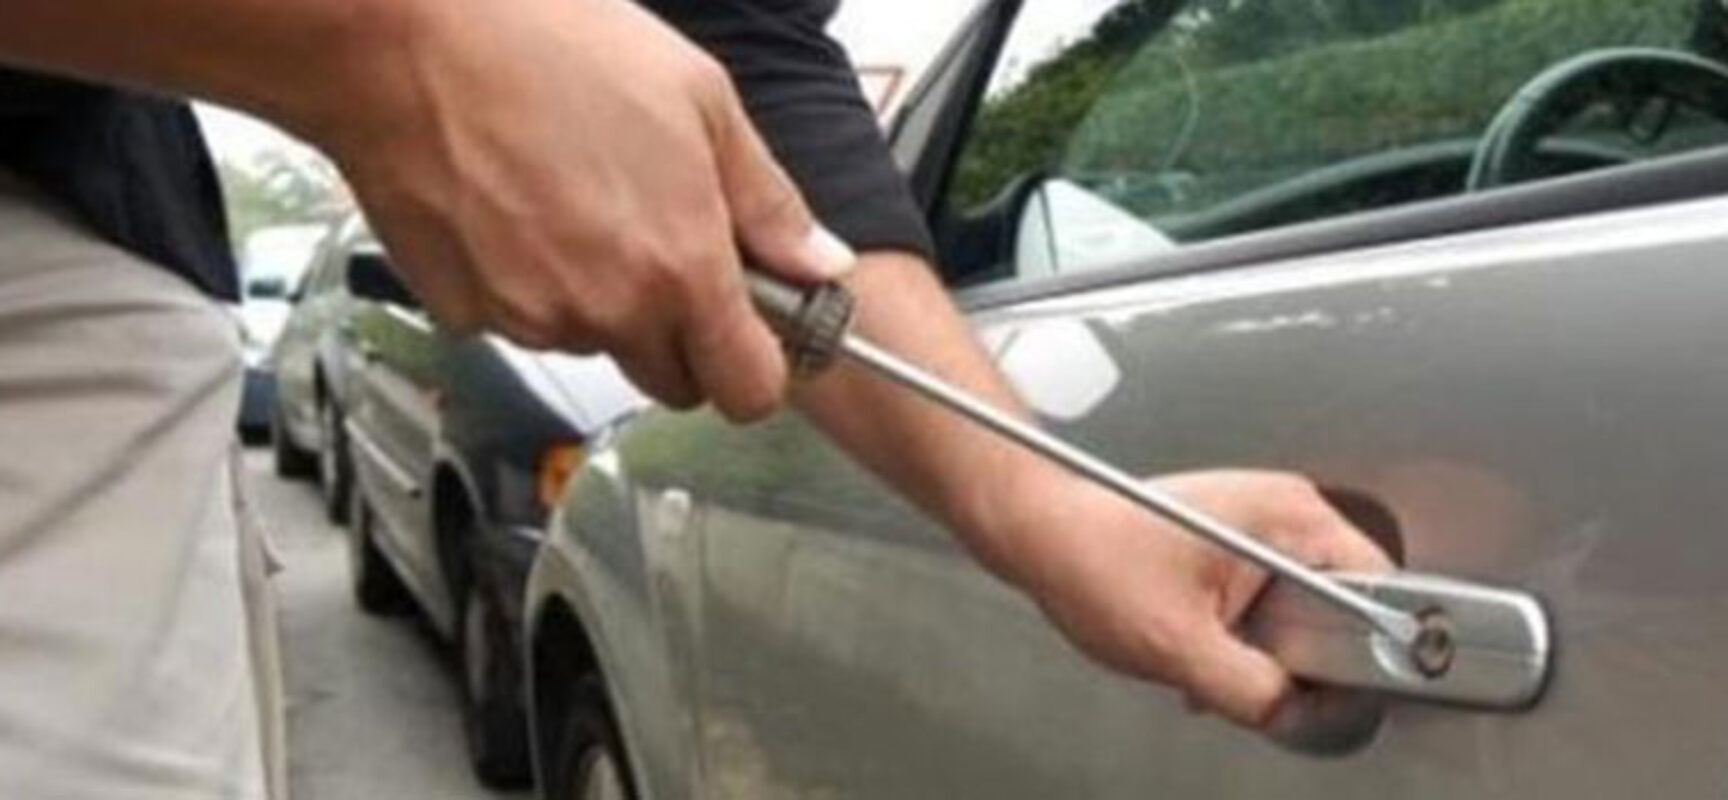 Tentativo di furto, donna biscegliese scopre ladro all’interno della sua auto